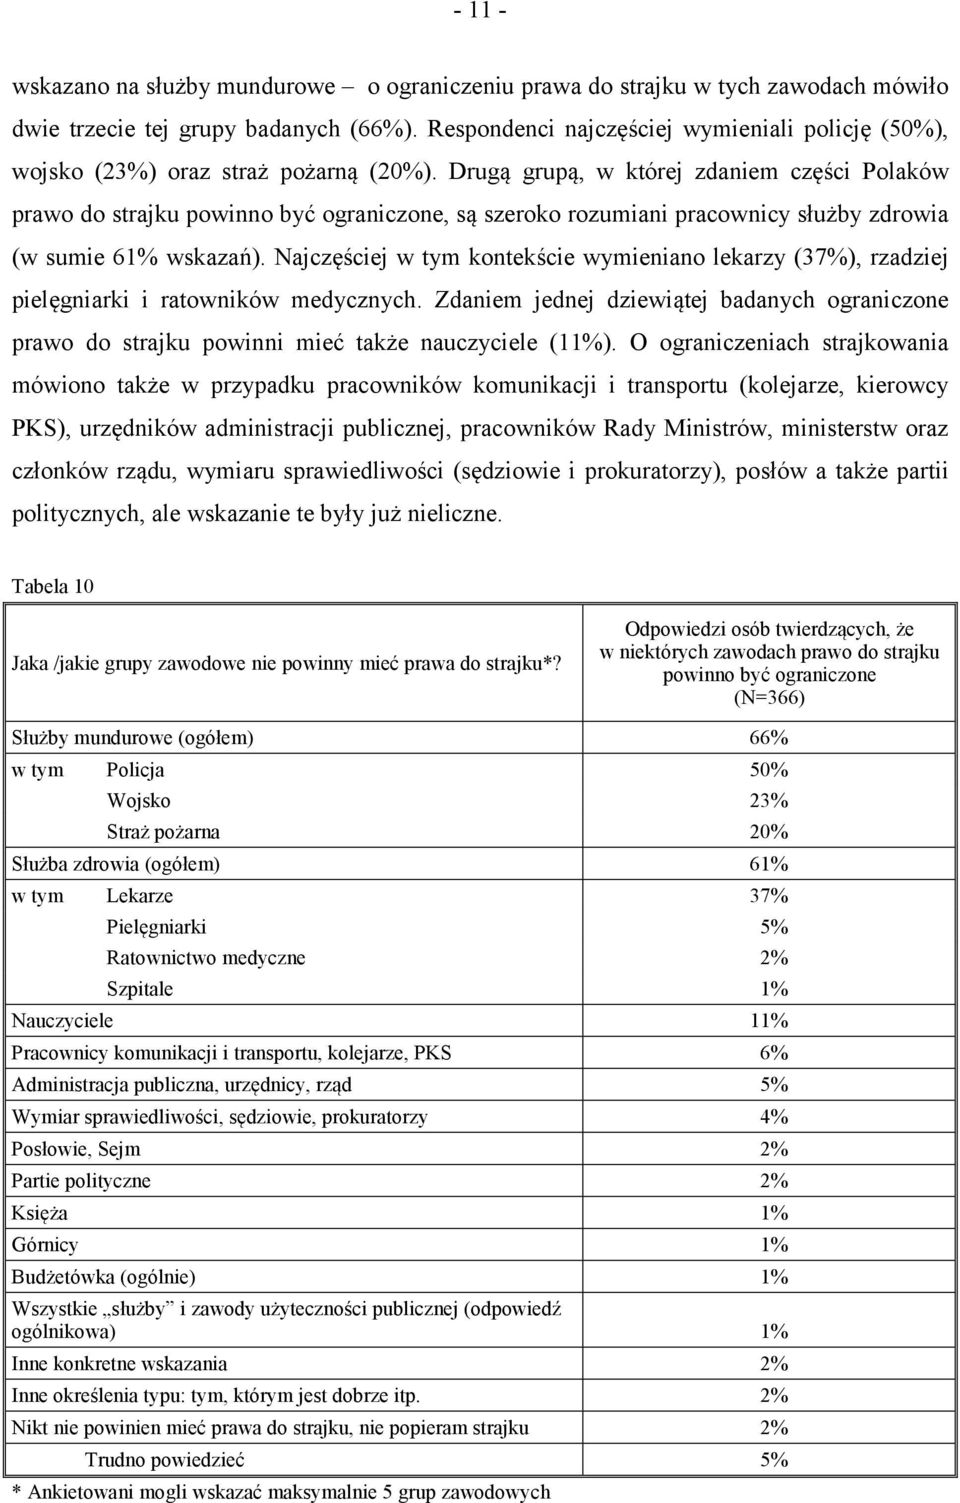 Drugą grupą, w której zdaniem części Polaków prawo do strajku powinno być ograniczone, są szeroko rozumiani pracownicy służby zdrowia (w sumie 61% wskazań).